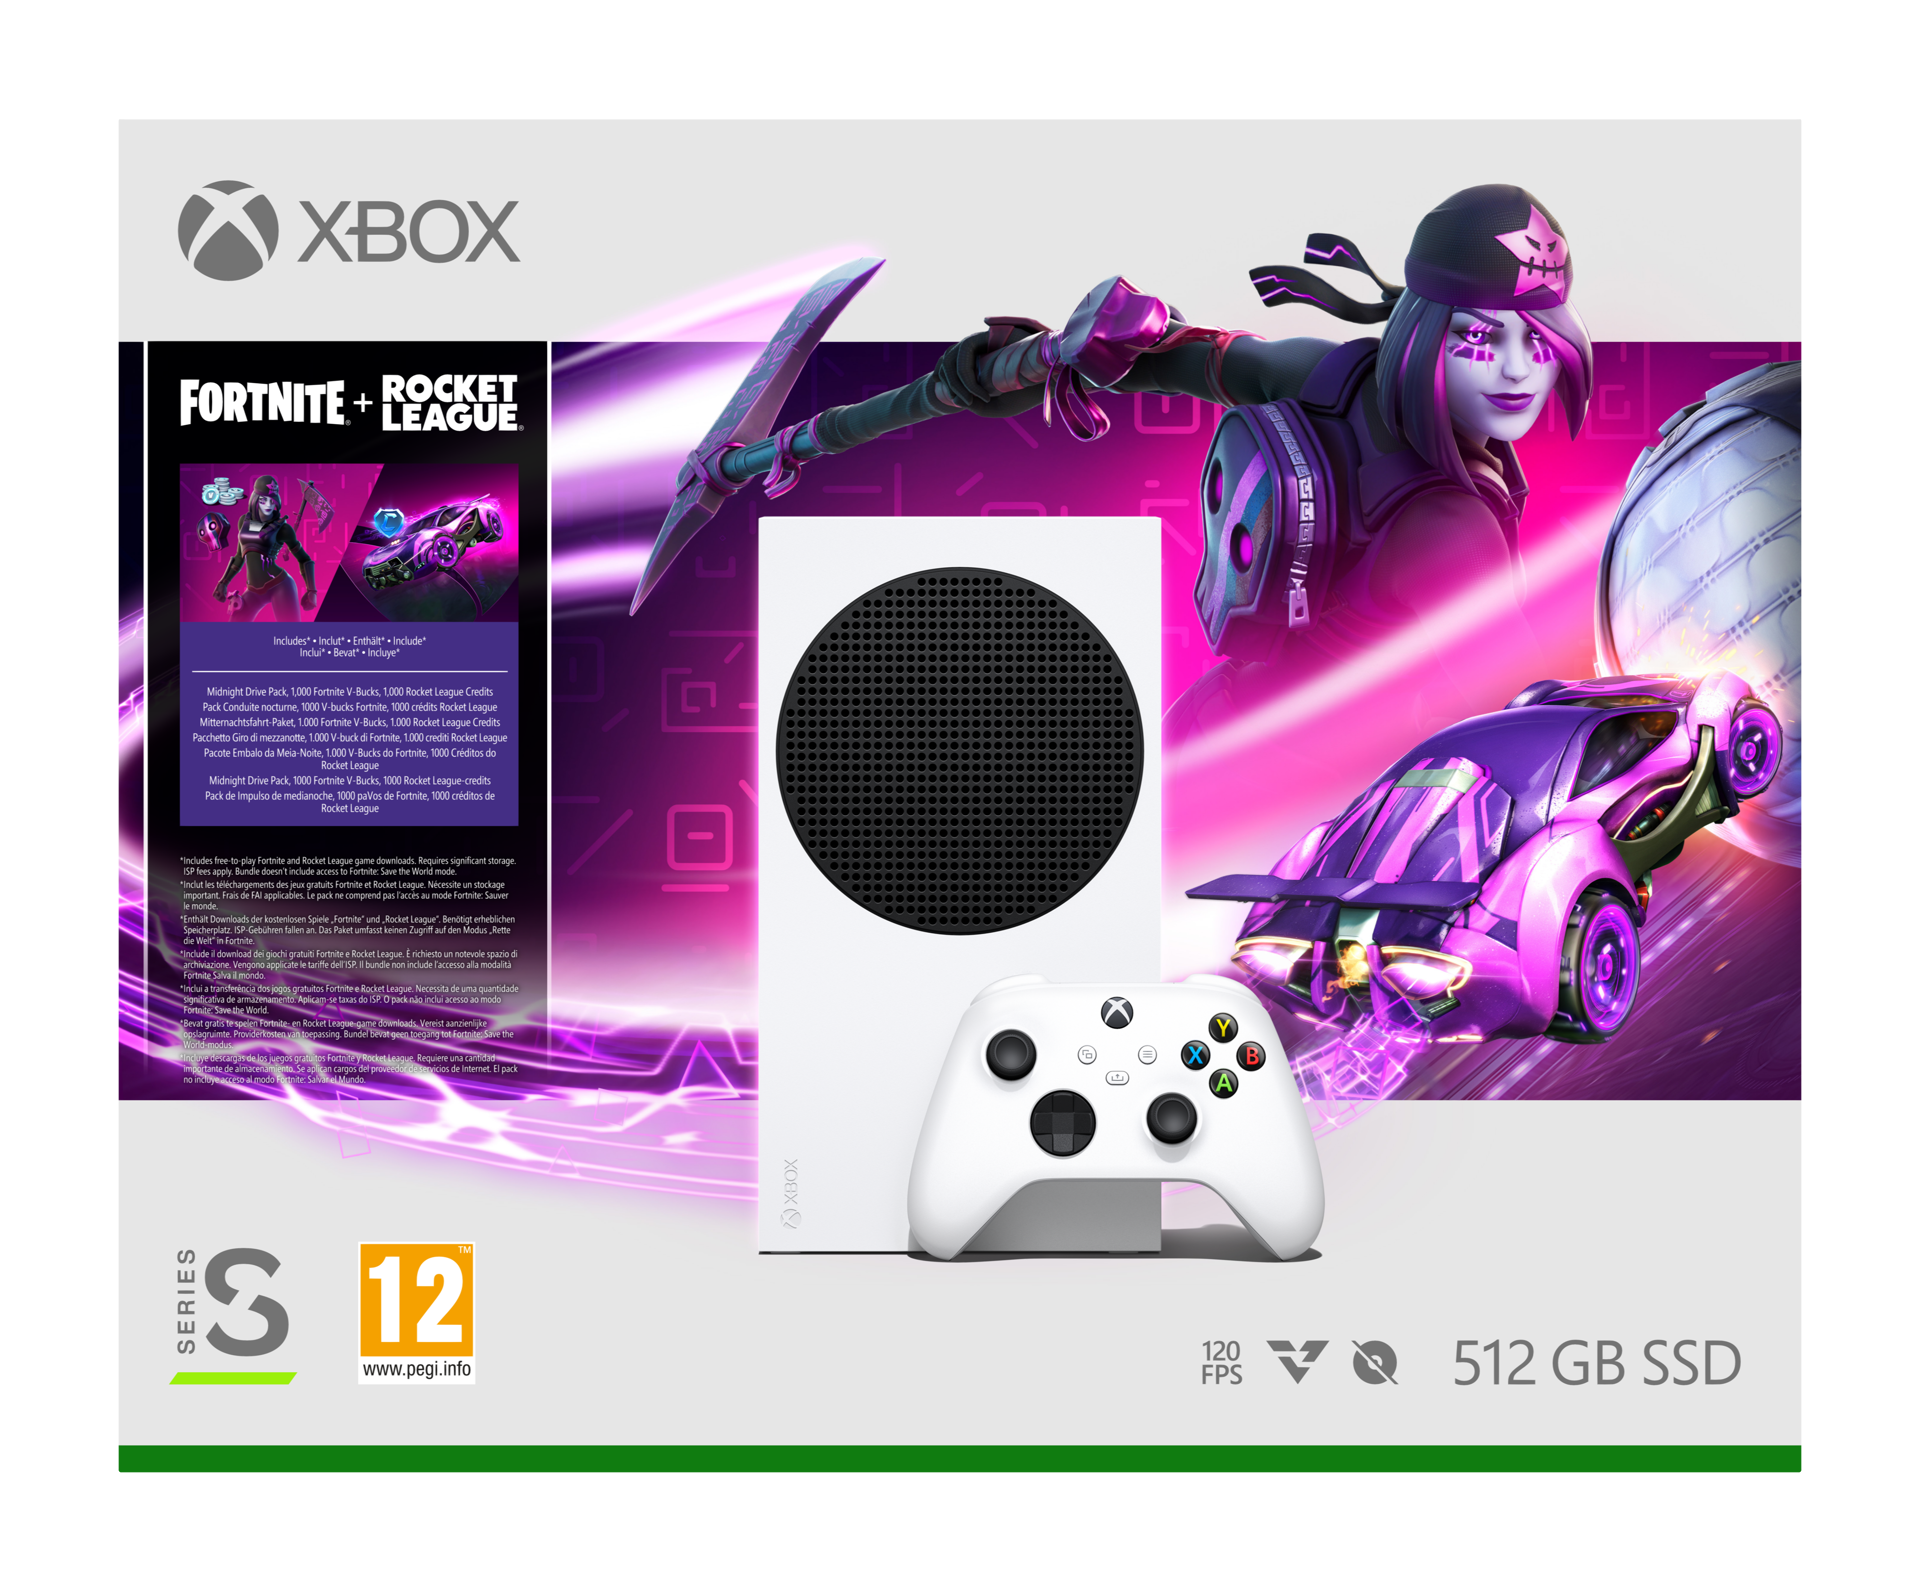 Venom Kit d'accessoires pour manette Xbox Elite Series 2 - Violet